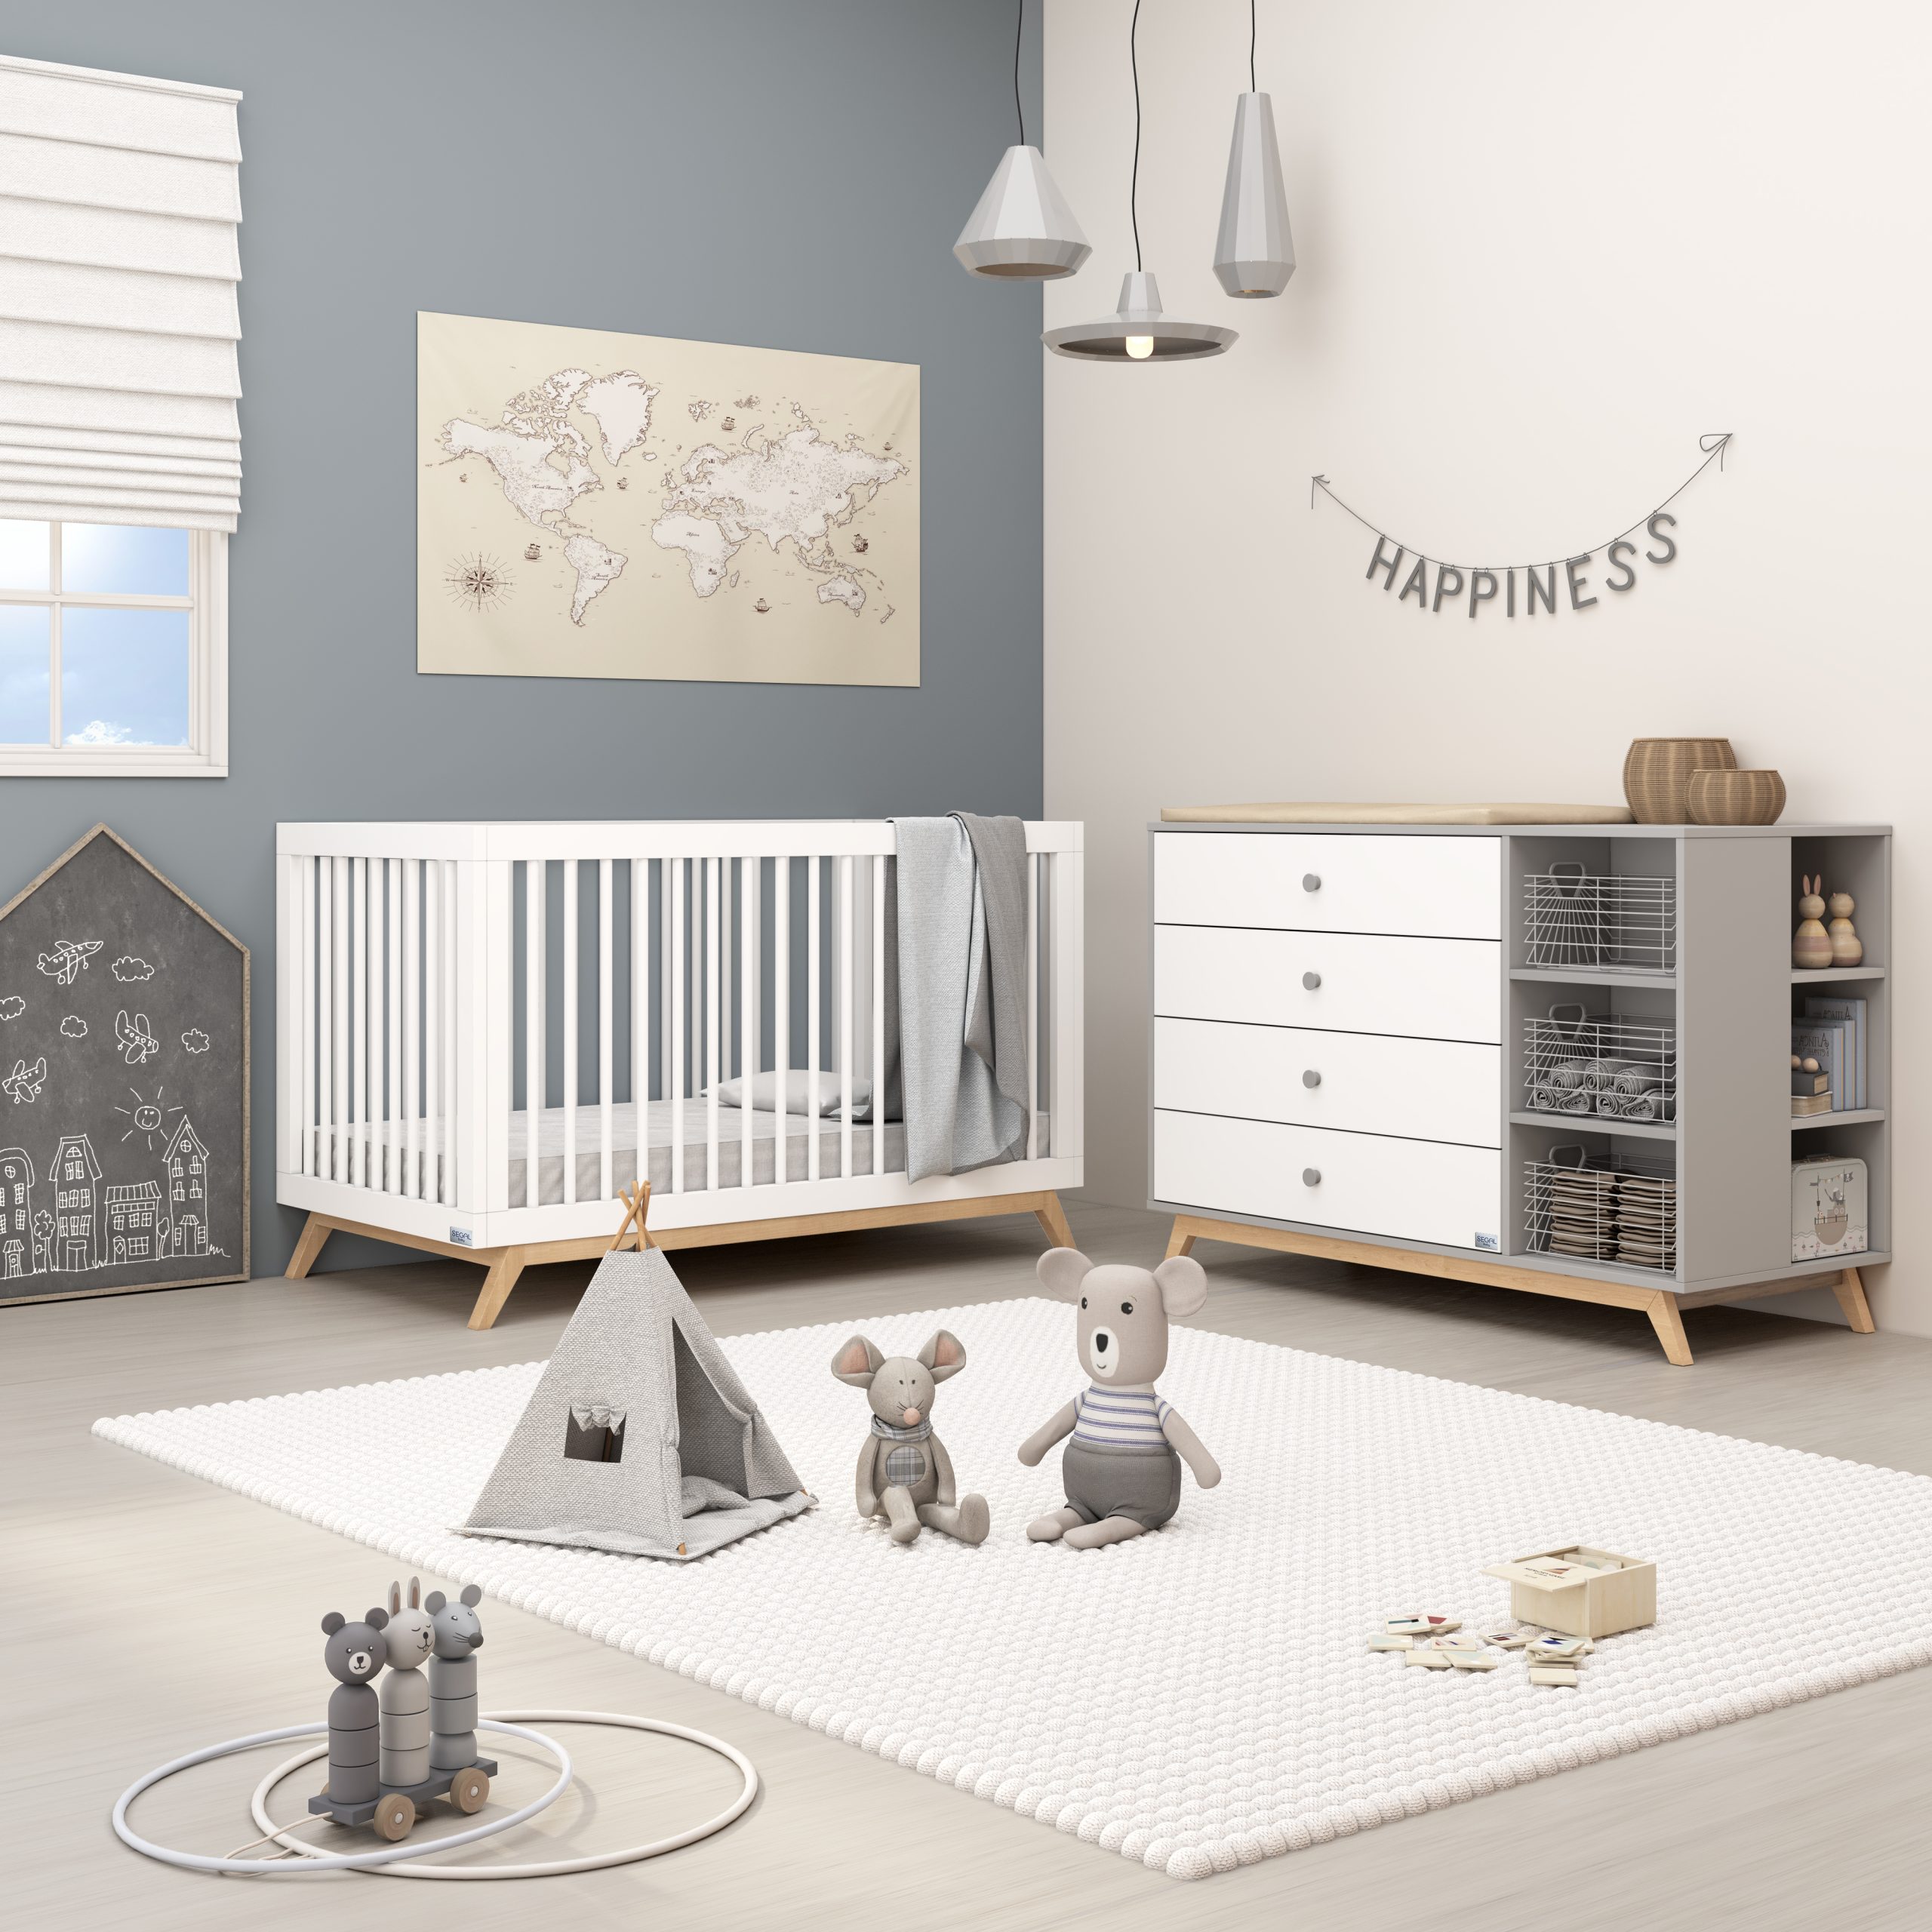 חדר שובל מתאים להורים שמחפשים עיצוב חדר לתינוק עם אפשרויות אחסון נרחבות